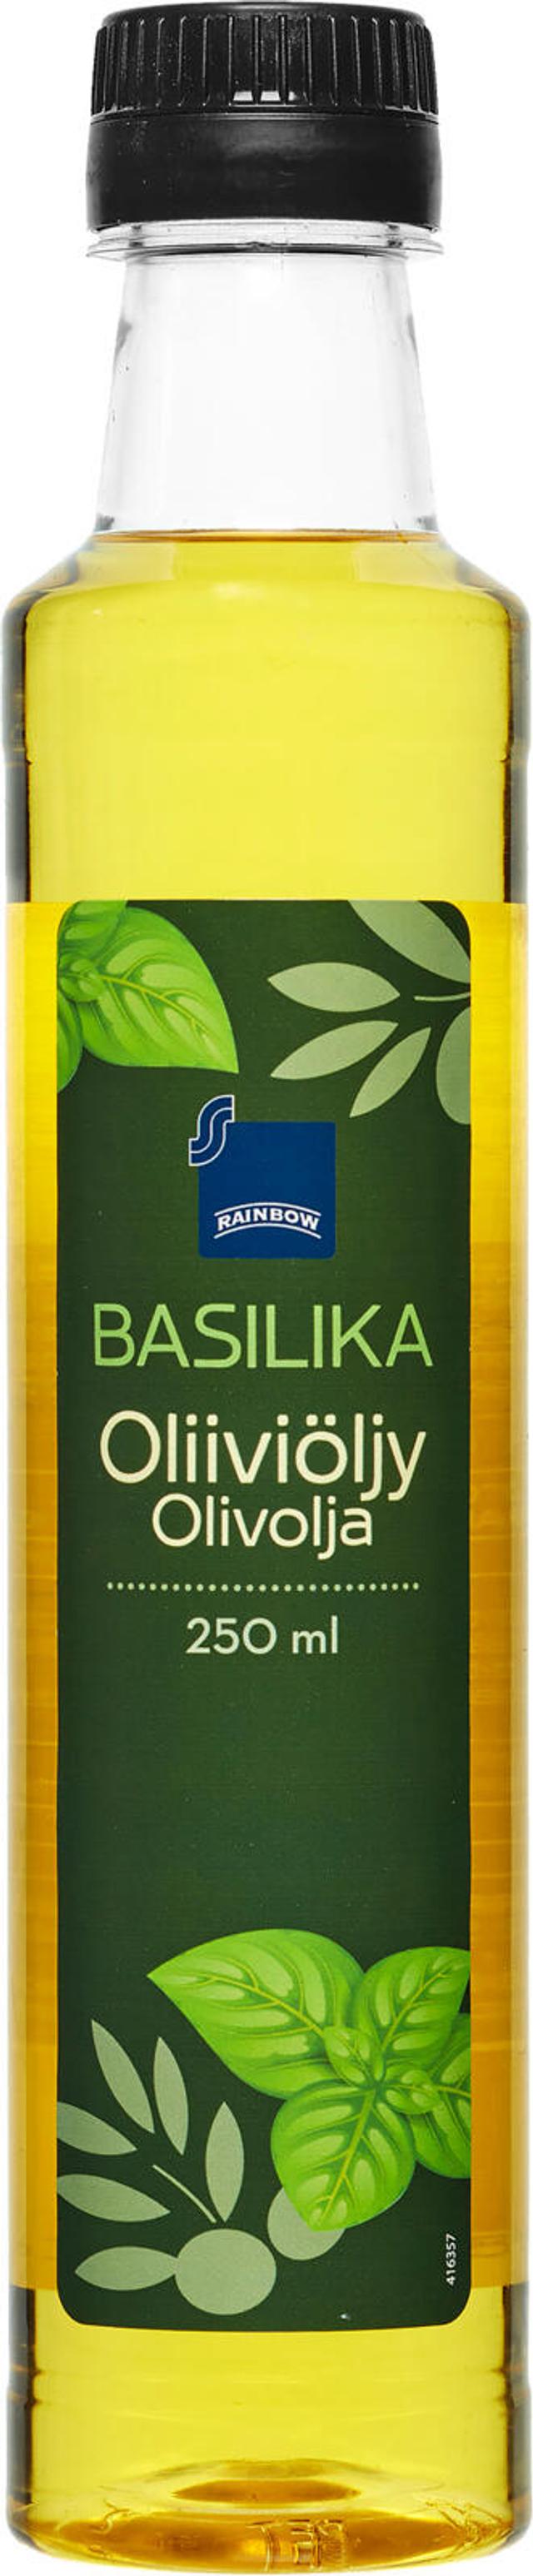 Rainbow basilikanmakuinen oliiviöljy 250ml